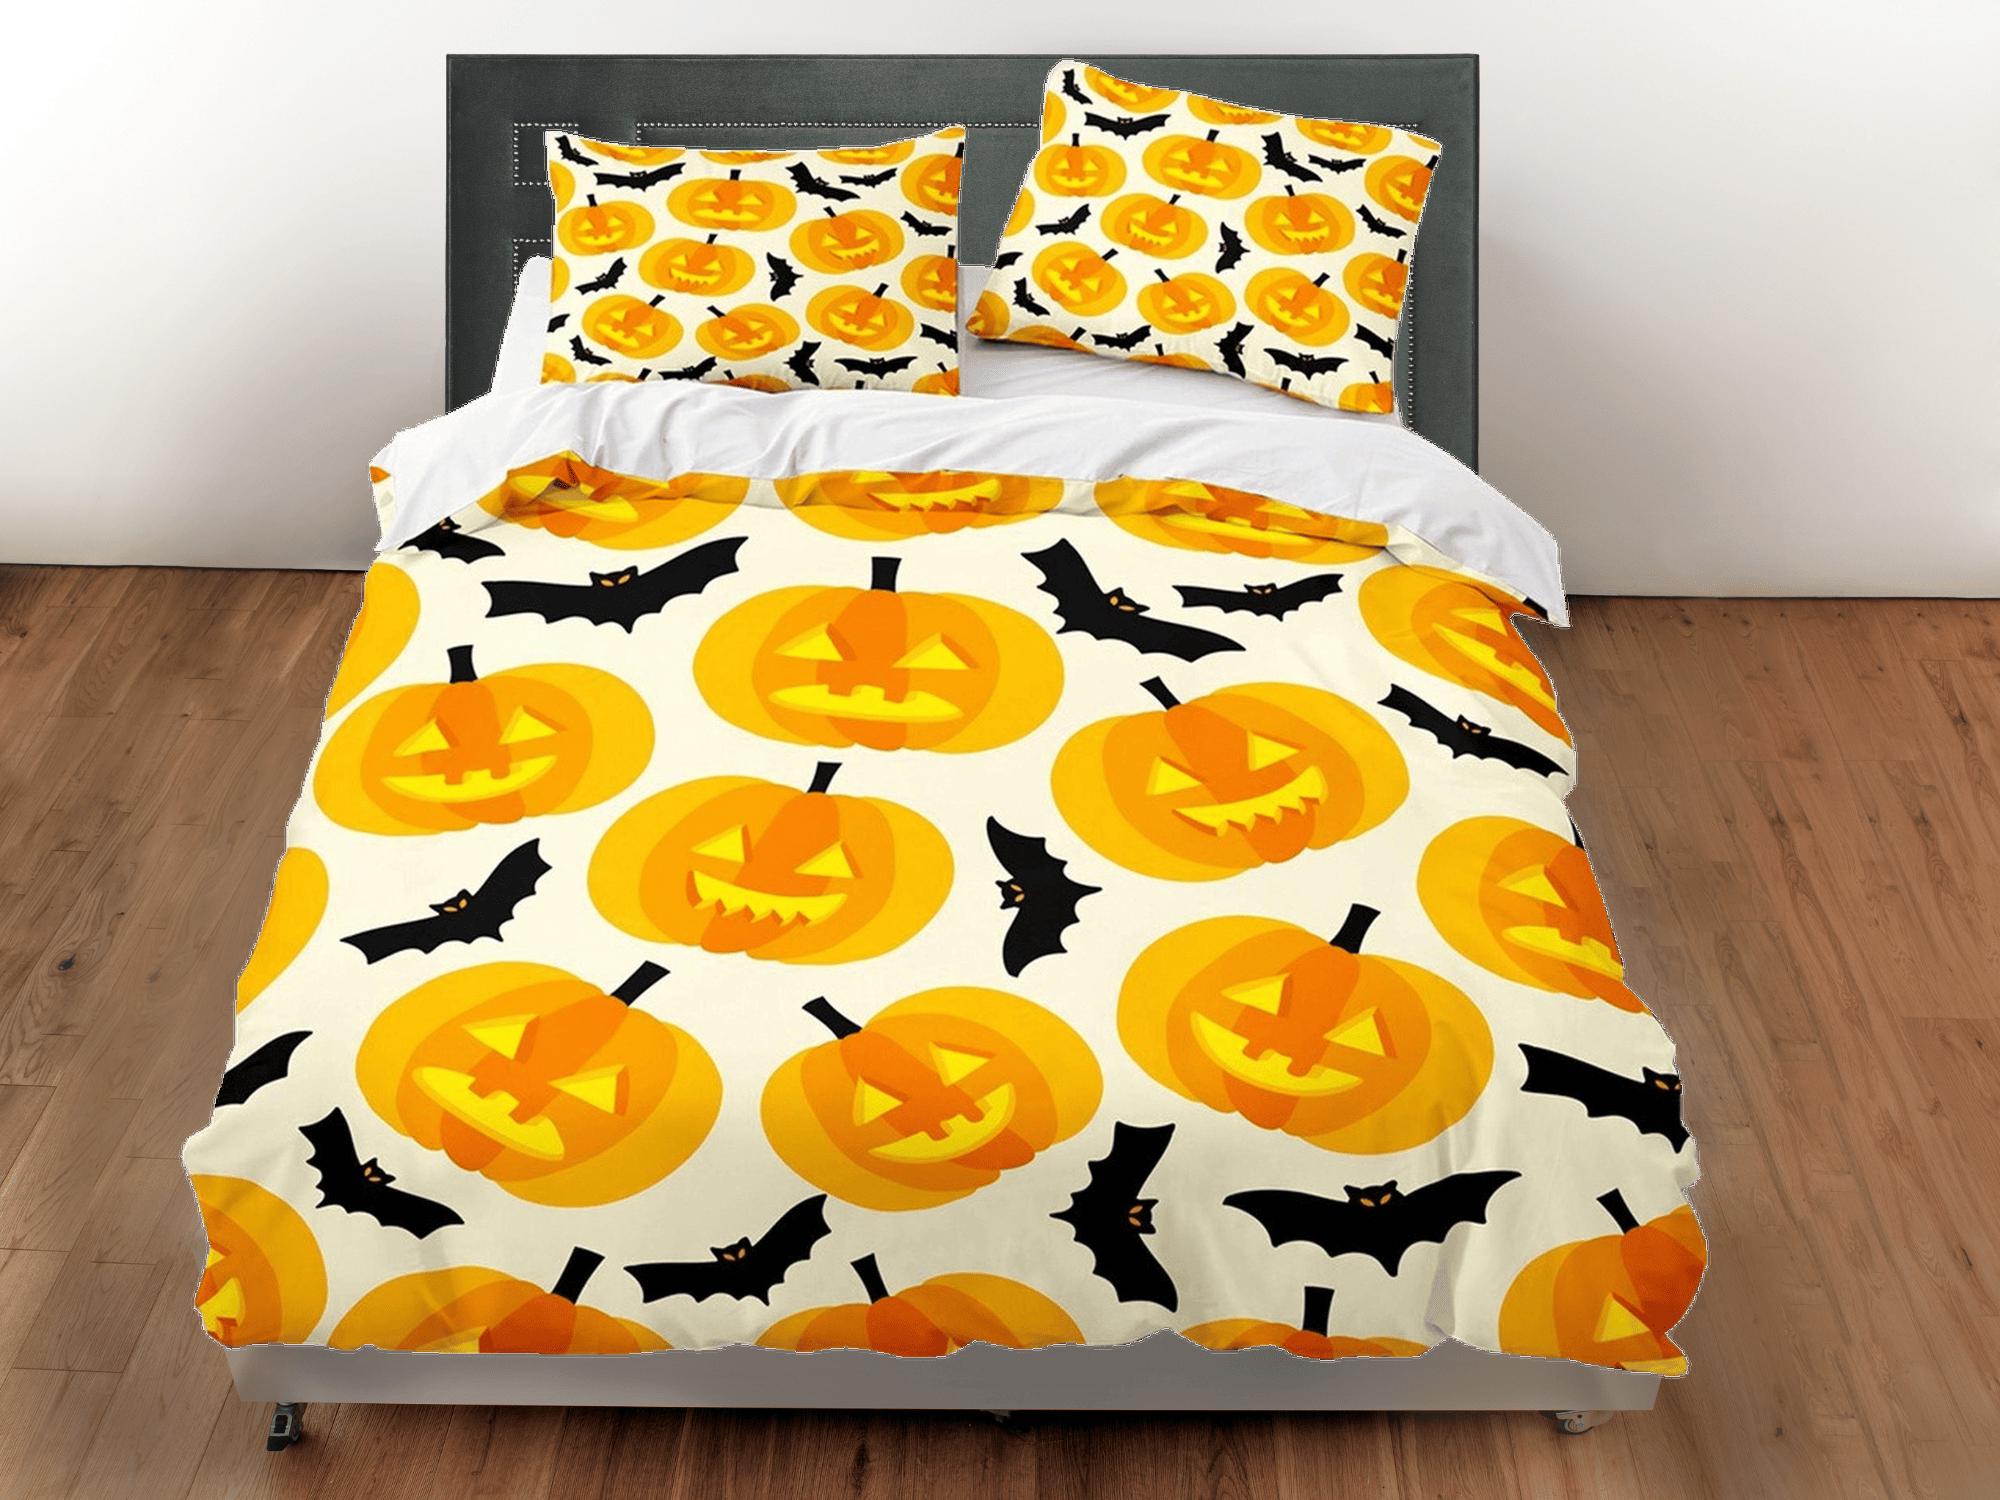 daintyduvet Pumpkin lantern bats halloween bedding & pillowcase, duvet cover set dorm bedding, halloween decor, nursery toddler bedding, halloween gift